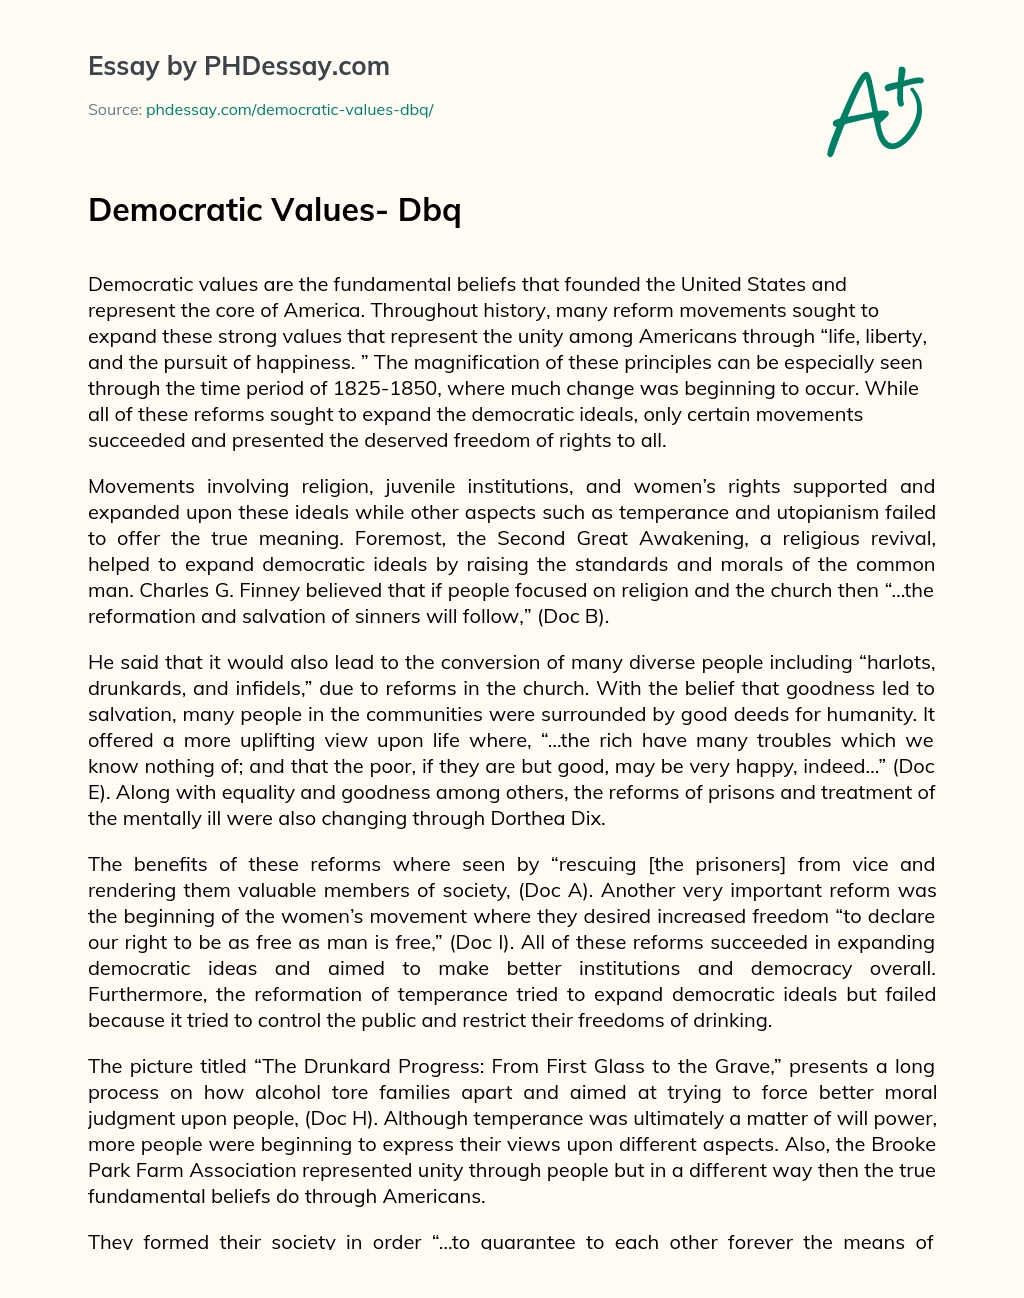 Democratic Values- Dbq essay